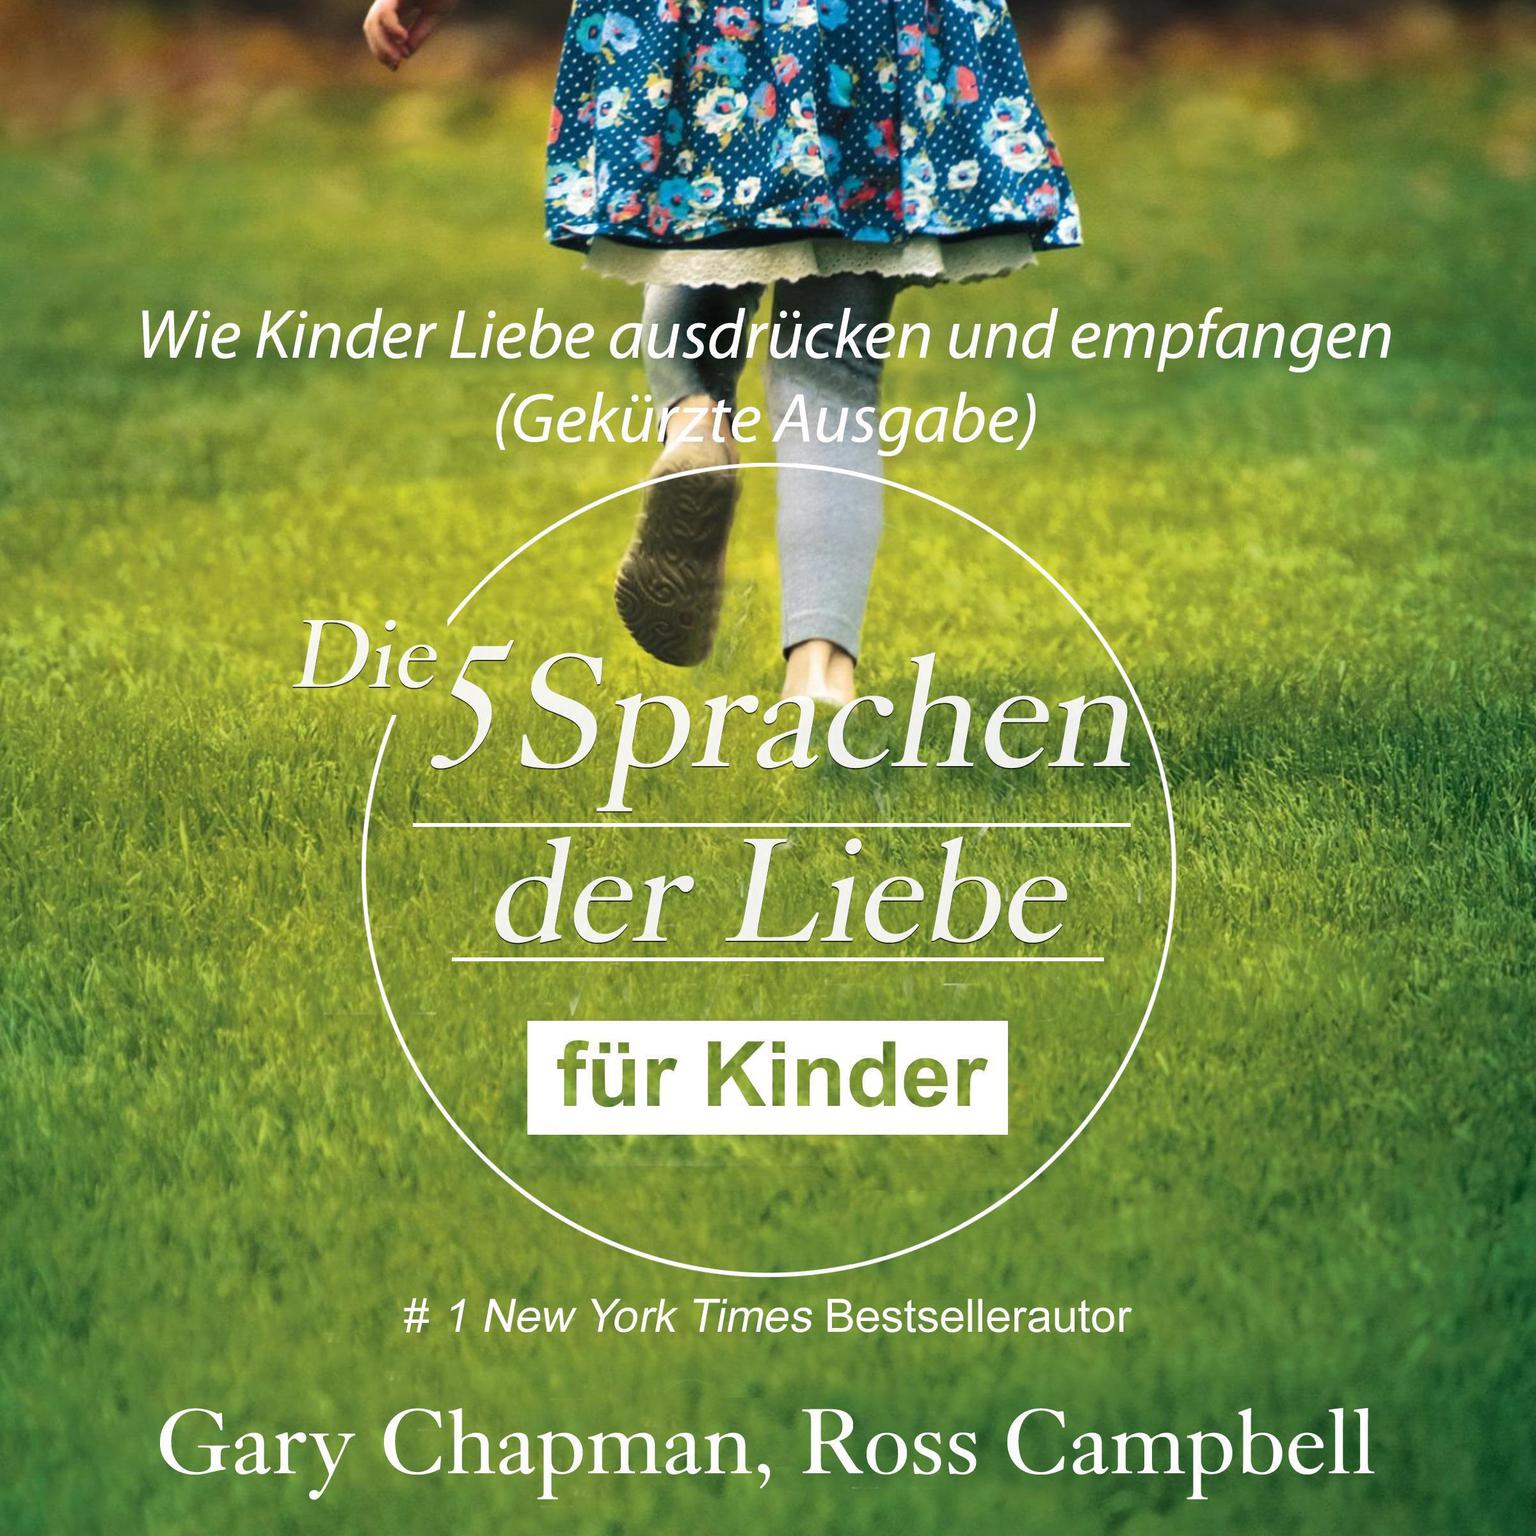 Die fünf Sprachen der Liebe für Kinder (abridged) (Abridged): Wie Kinder Liebe ausdrücken und empfangen Audiobook, by Gary Chapman